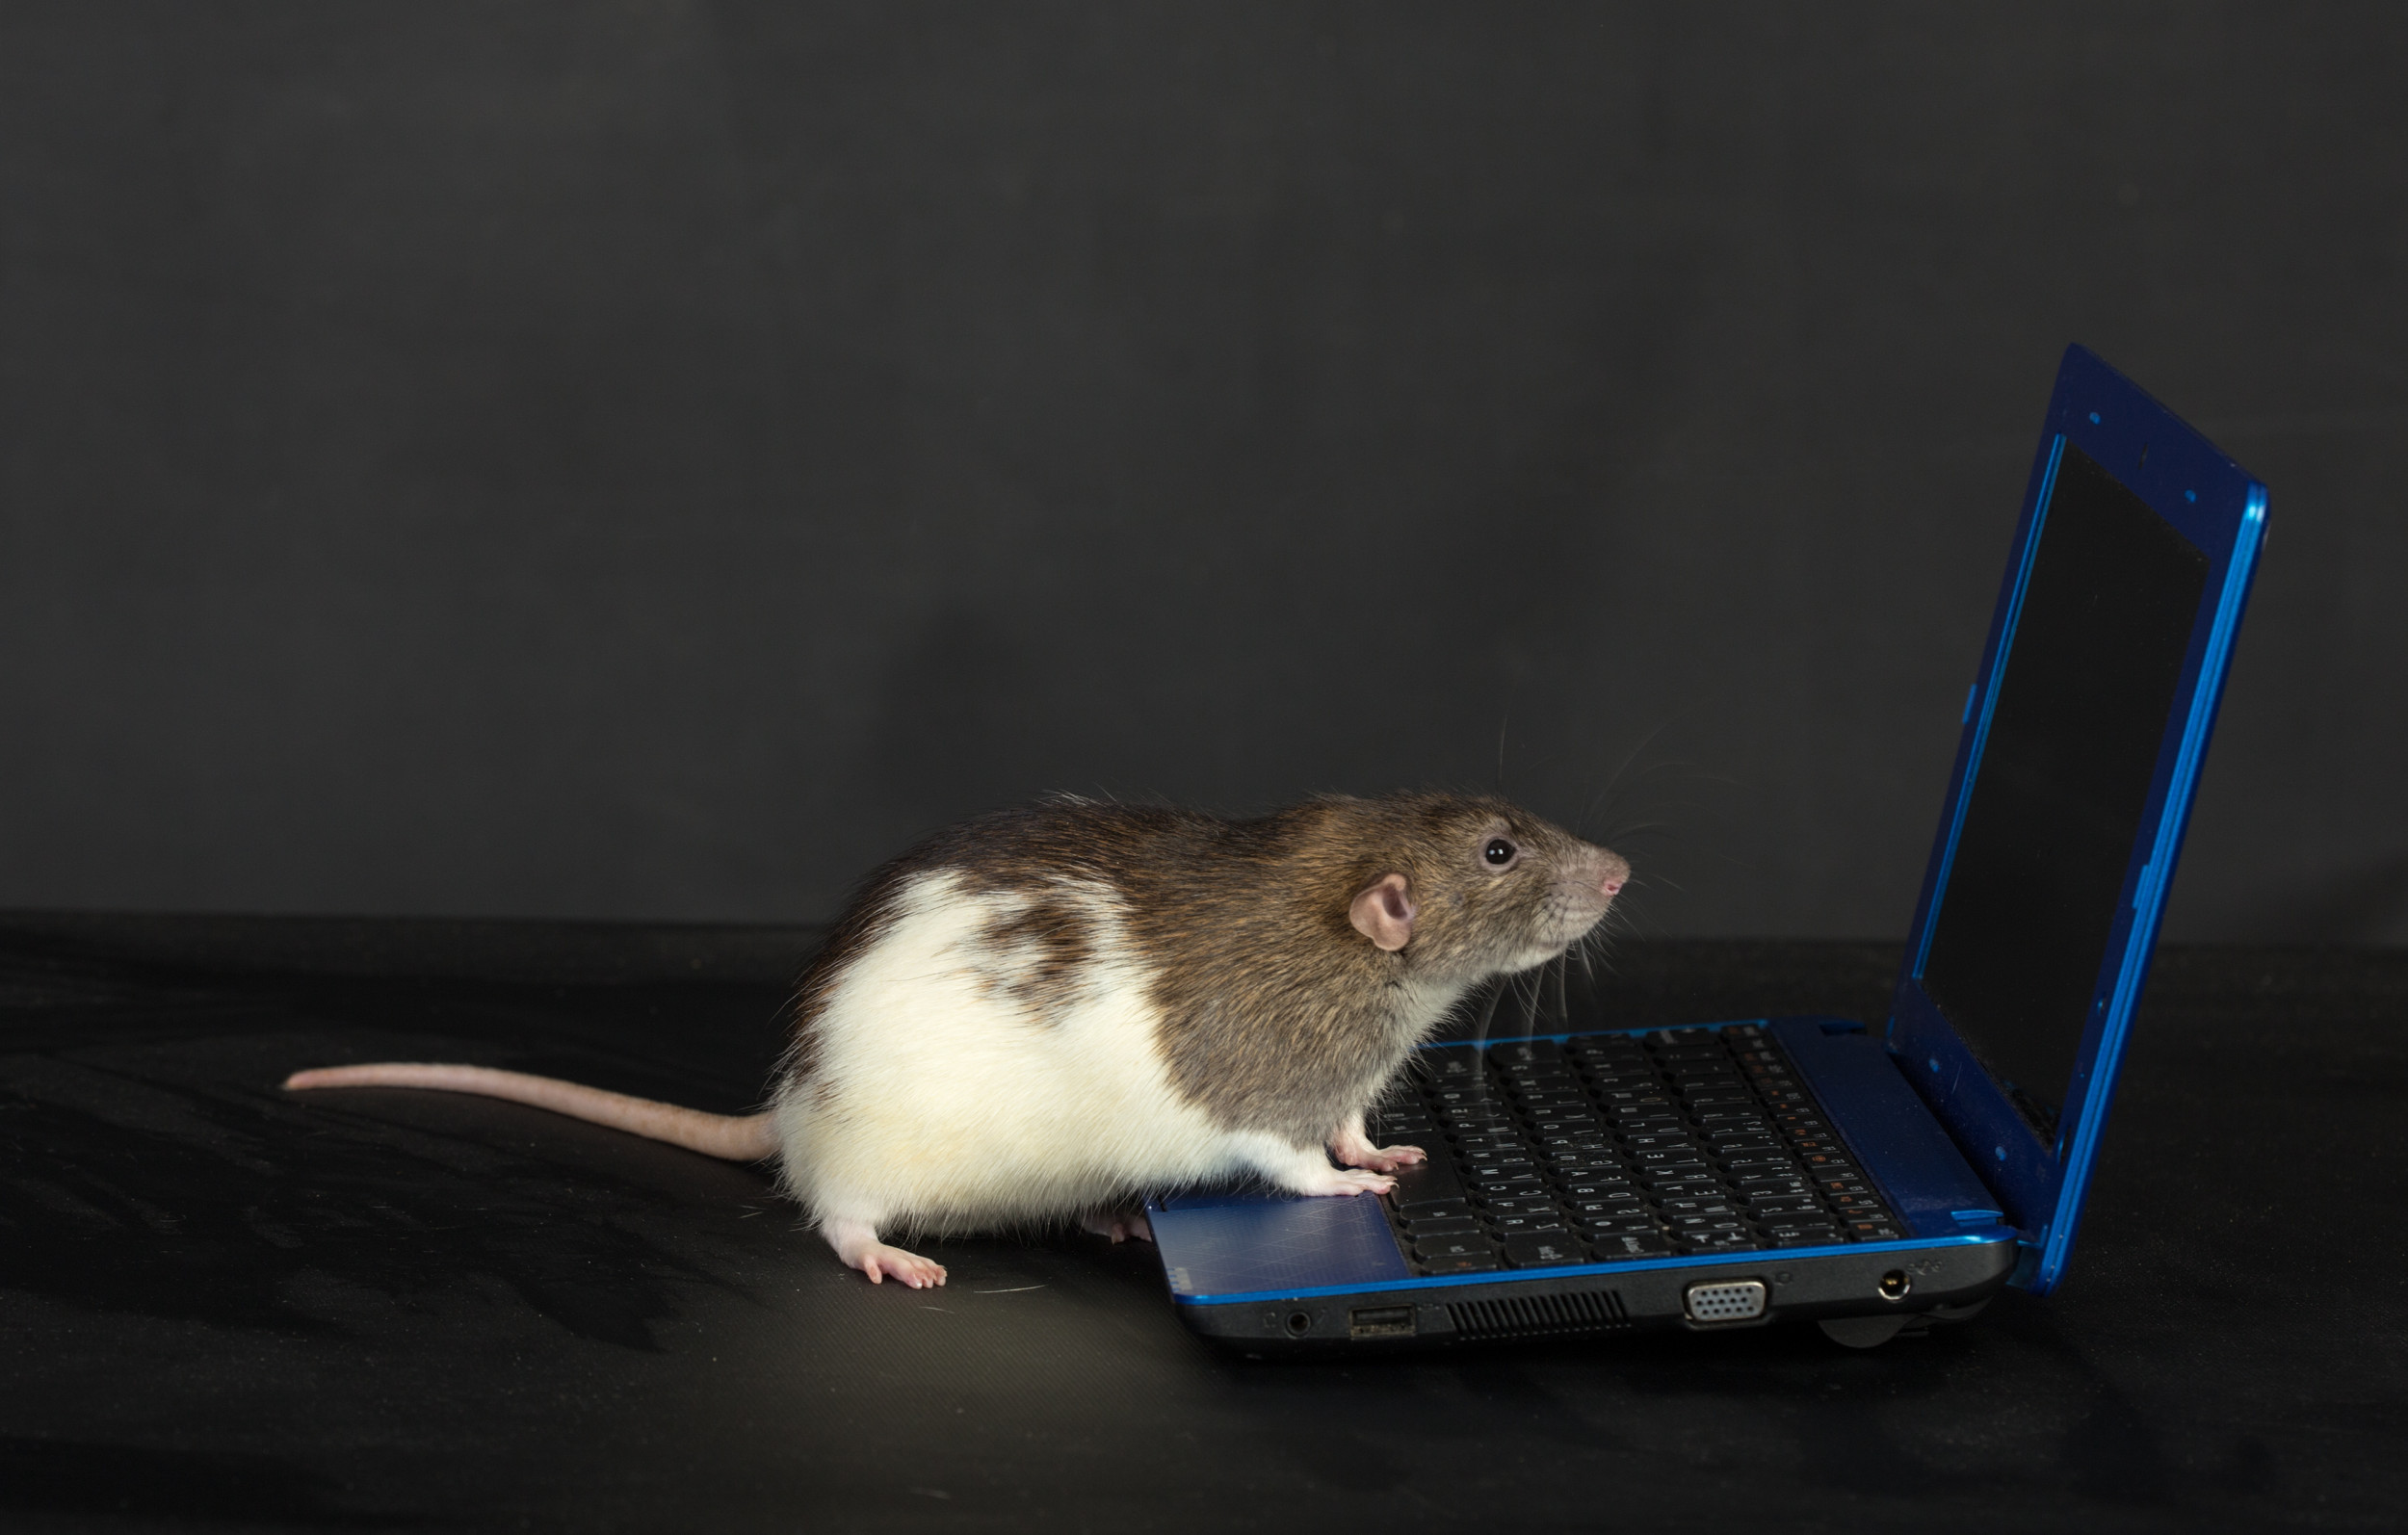 Мышь включает компьютер. Мышь за компьютером. Мышка. Компьютерная крыса. Мышка для компьютера.